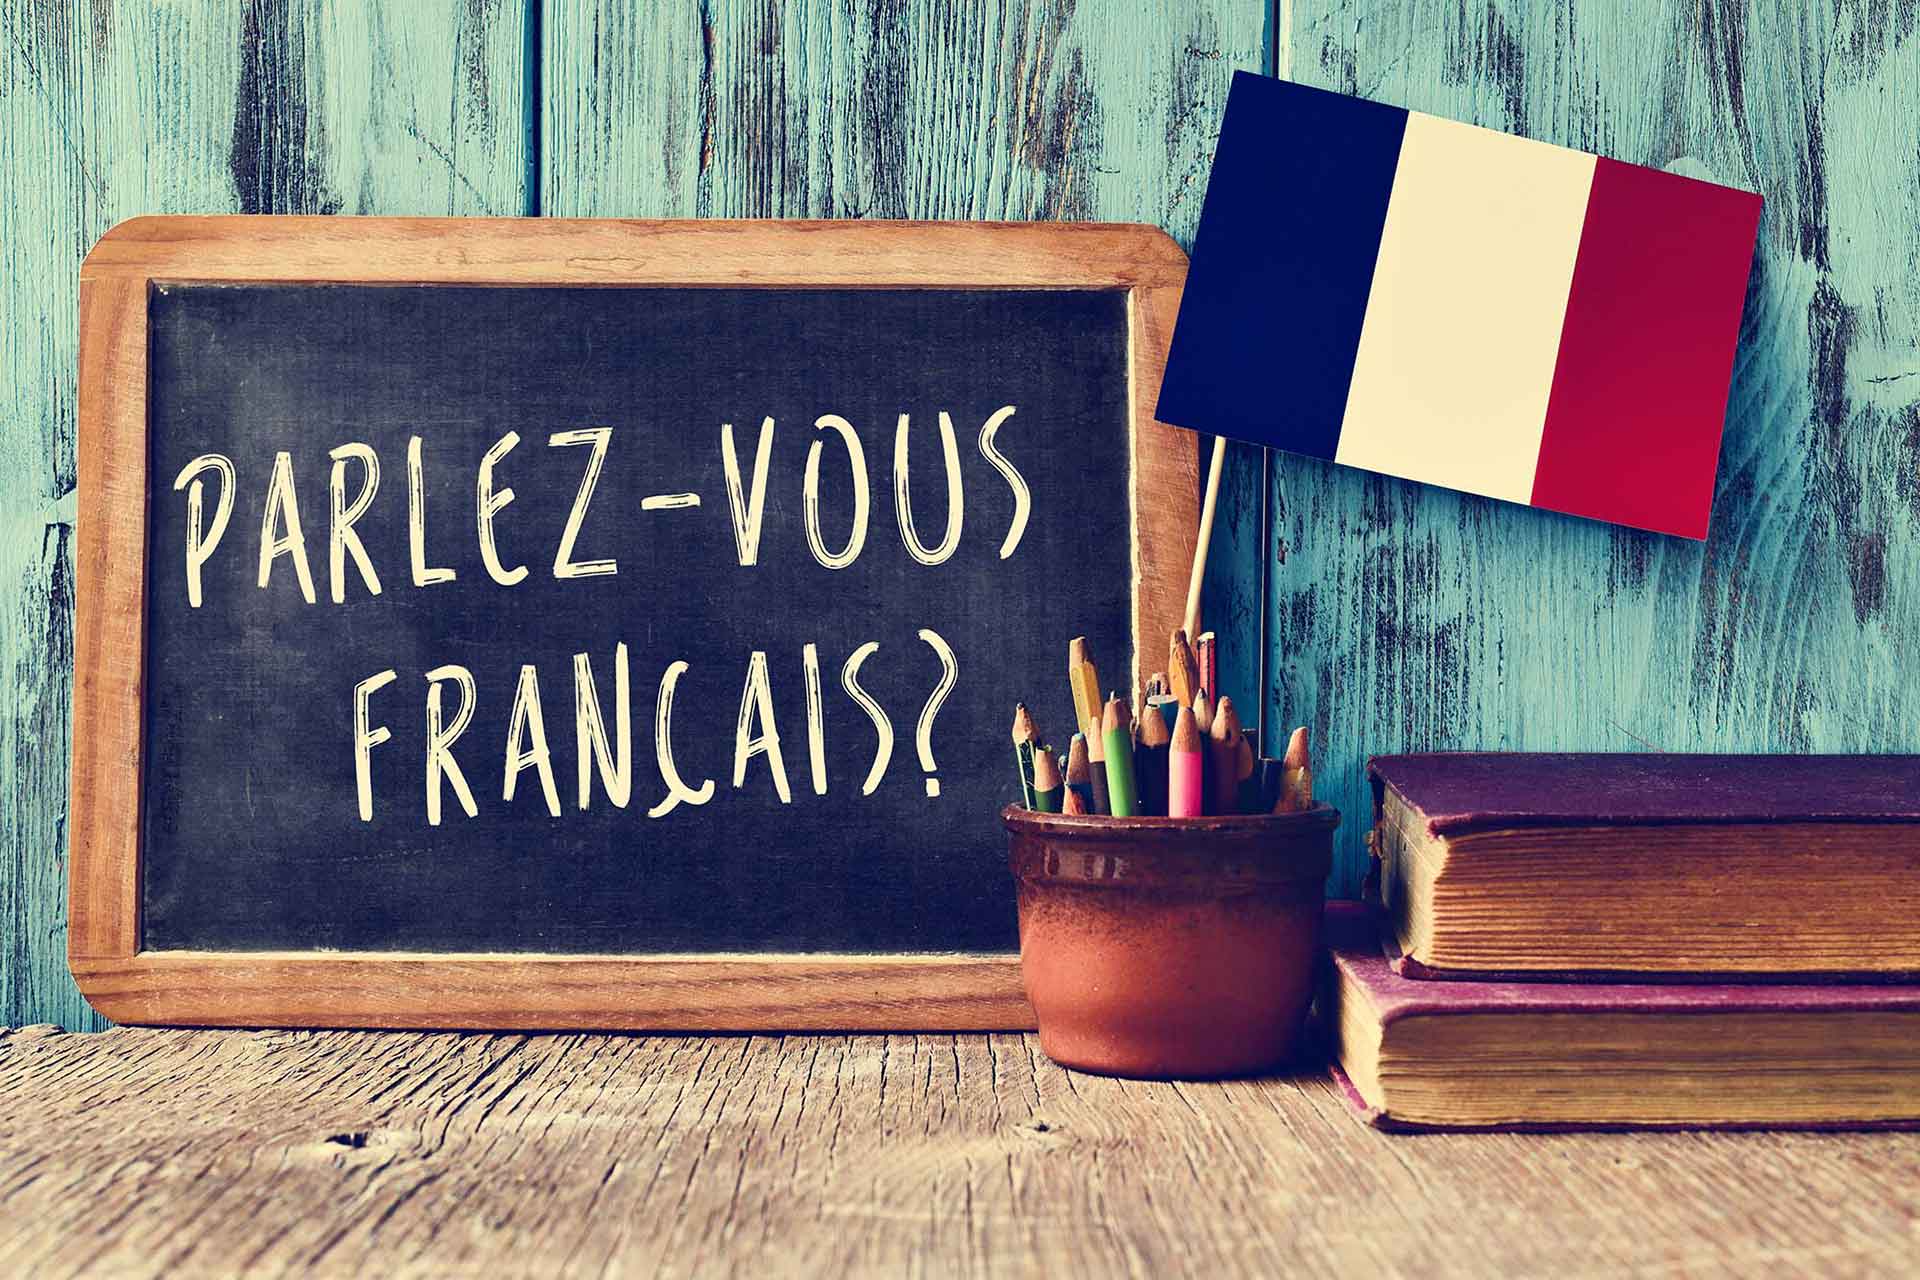 Tableau avec les mots "Parlez-vous français" écrit en craie